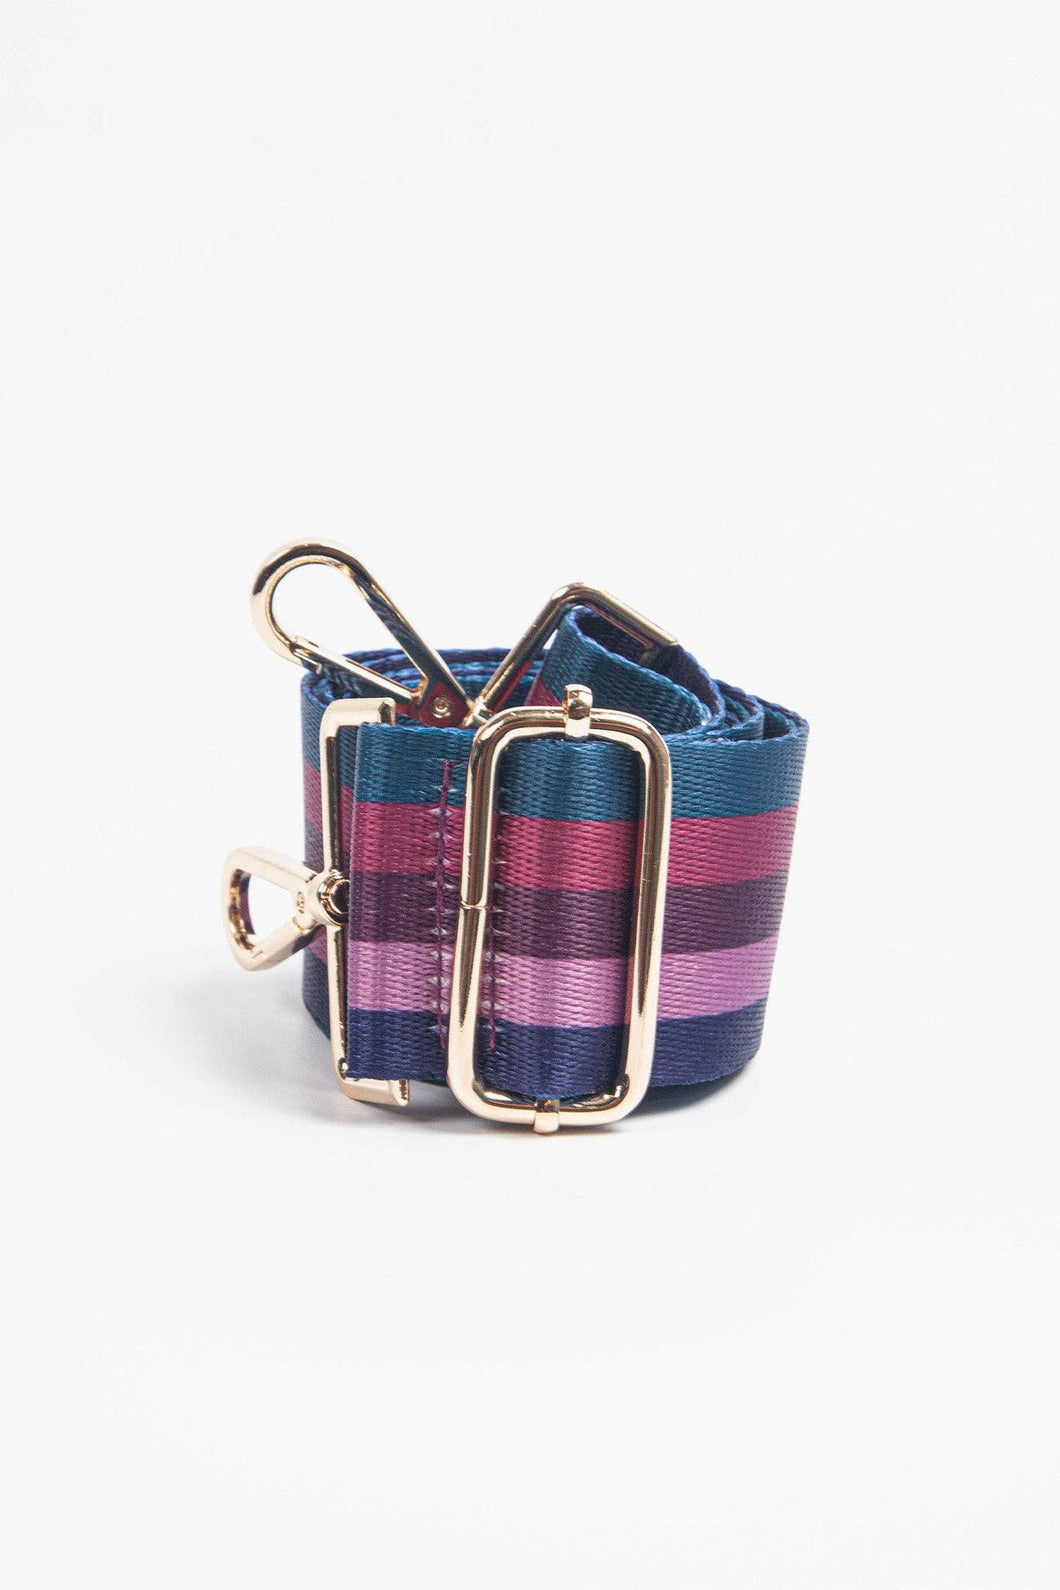 Navy Blue Pink Multi Stripe Wide Bag Strap